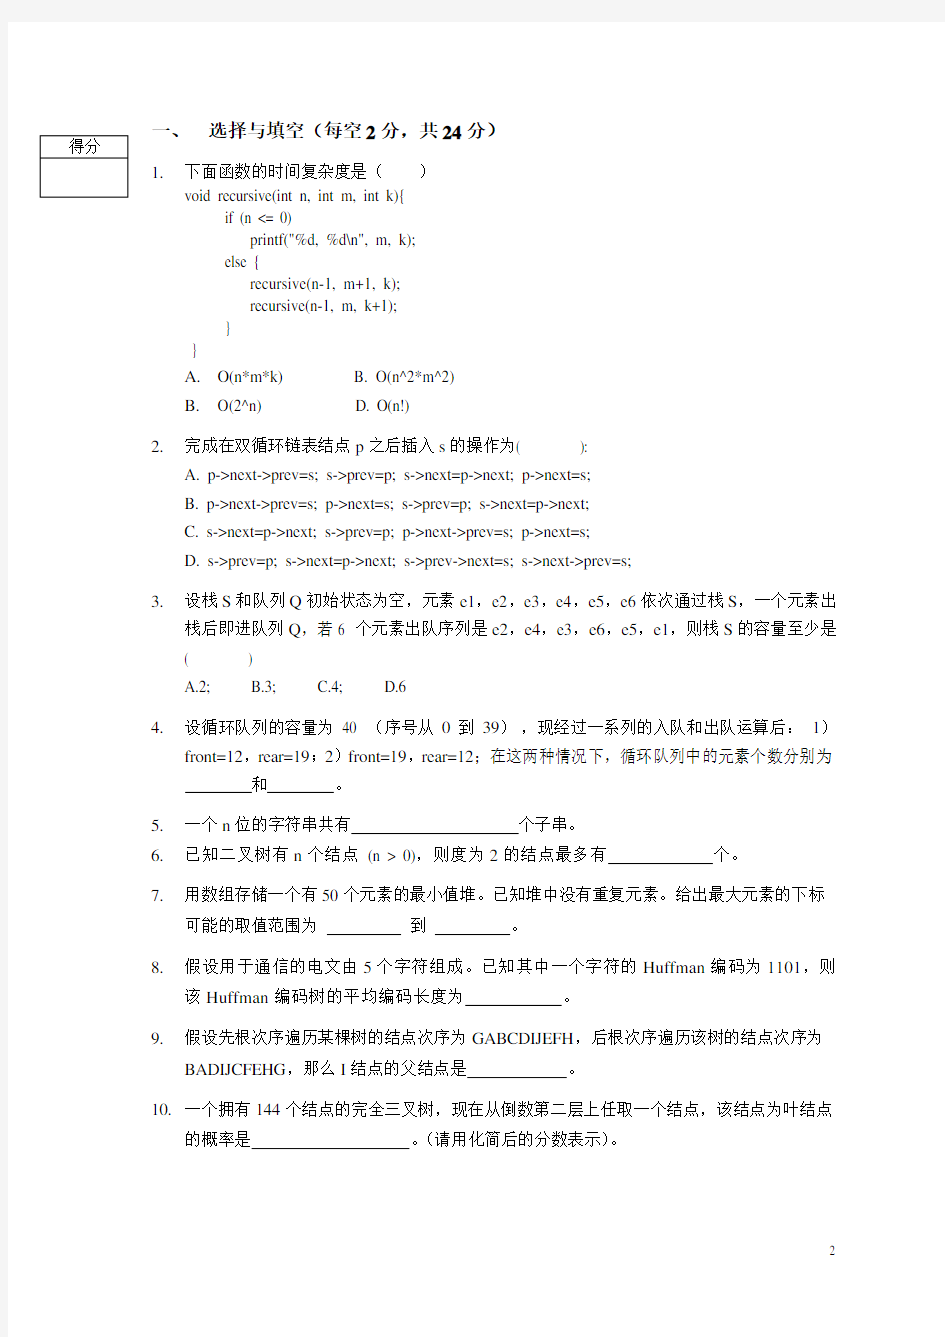 北京大学数据结构与算法2017-2018数算期中考试题考试试题(Final)